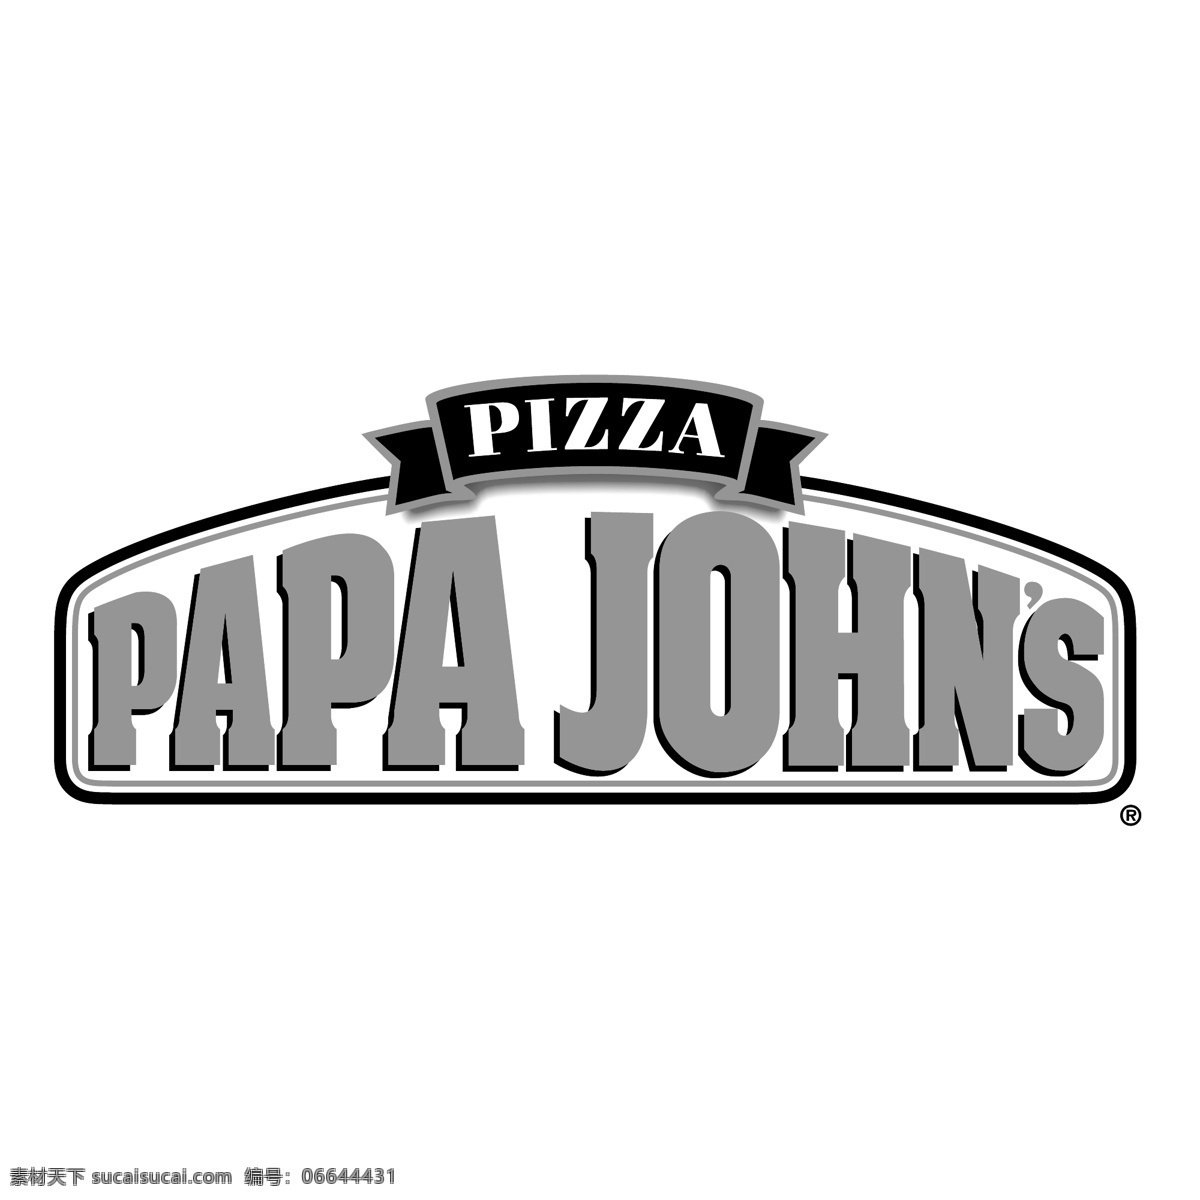 爸爸 约翰 约翰比萨饼 比萨饼 棒约翰披萨 矢量 棒 芝士 比萨 比萨约翰标志 矢量比萨约翰 约翰比萨 比萨约翰 翰 国际 矢量约翰比萨 约翰标志 蓝色